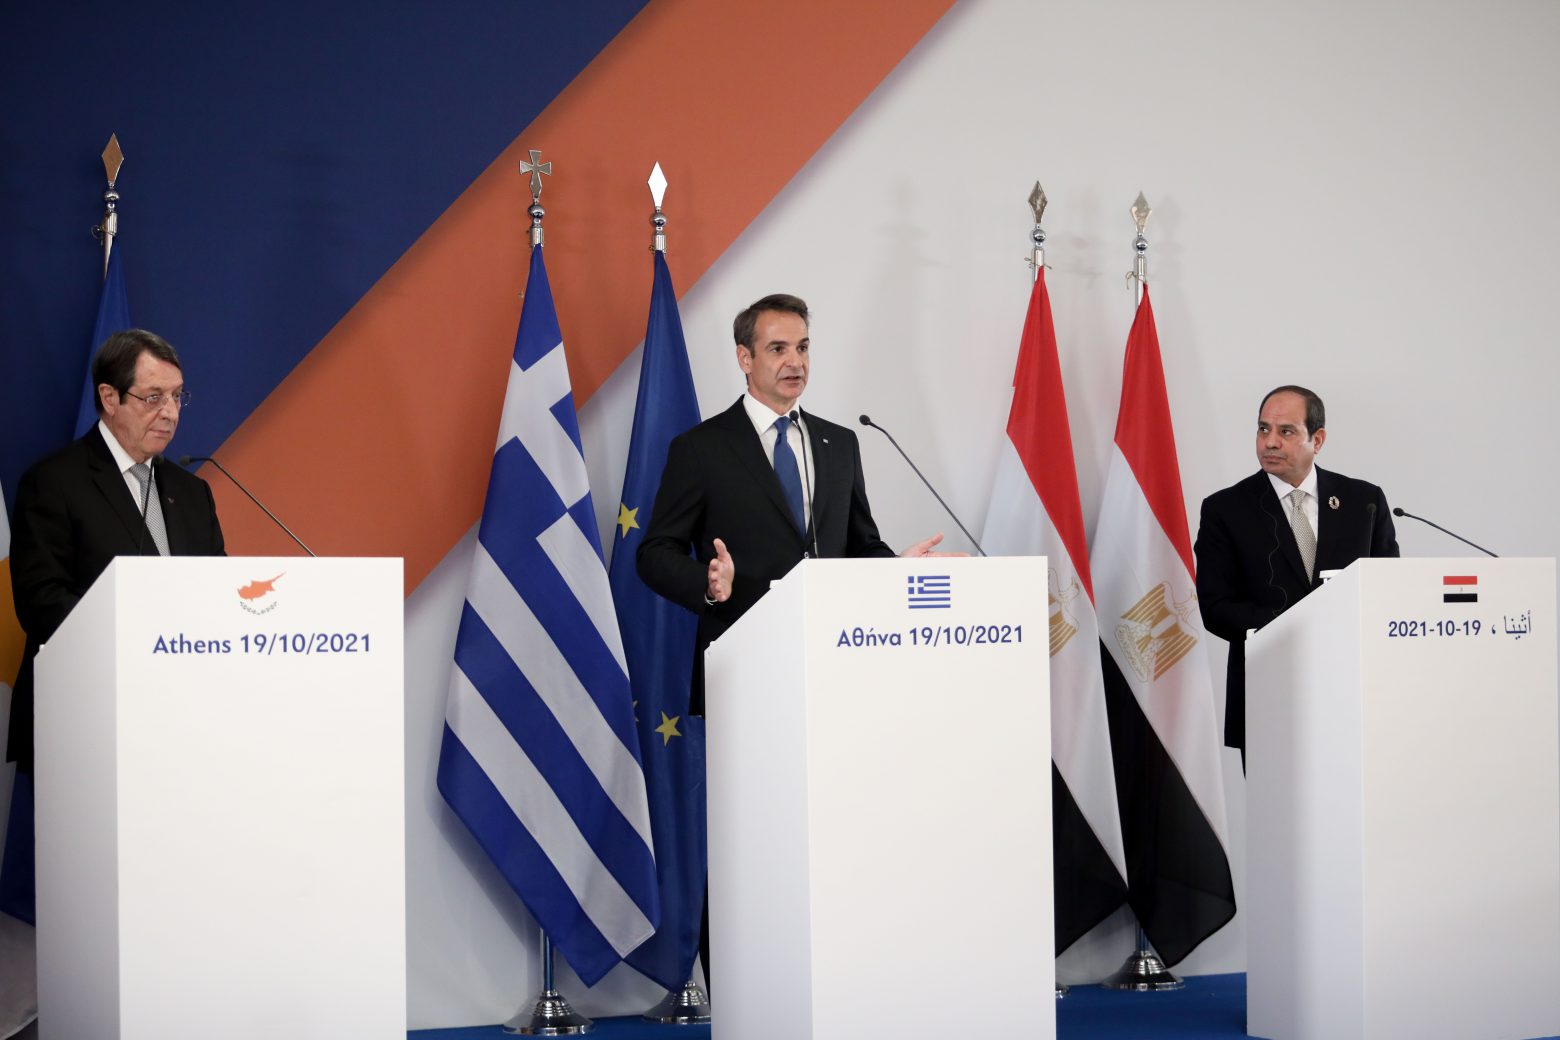 Τριμερής Σύνοδος - Υπογράφηκε μνημόνιο κατανόησης ανάμεσα σε Ελλάδα, Κύπρο και Αίγυπτο για τα θέματα Διασποράς